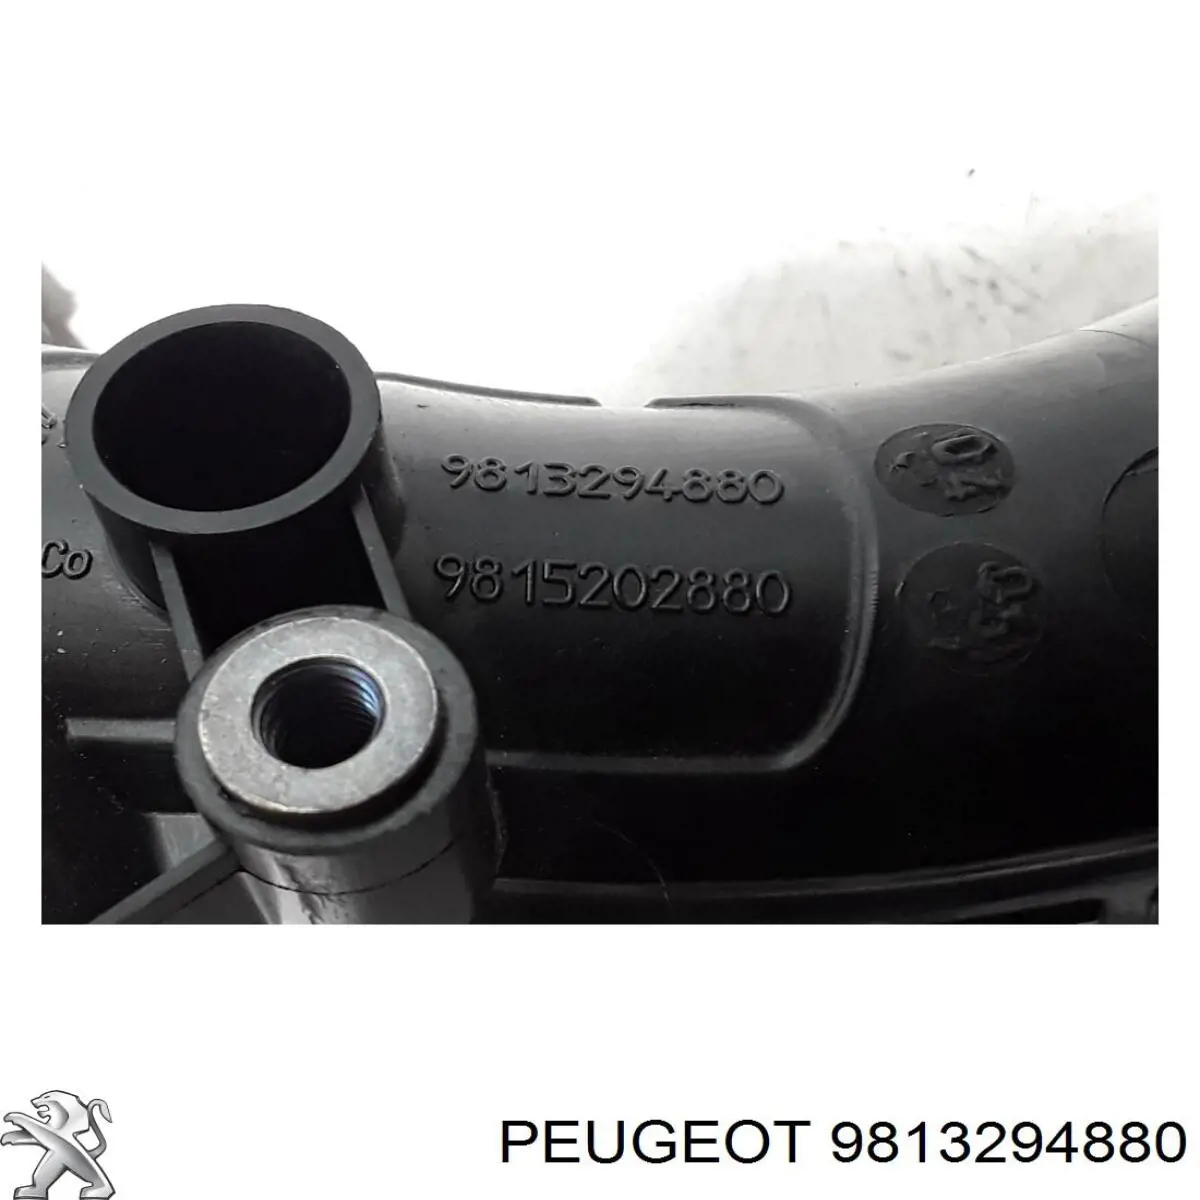 Tubo flexible de aspiración, cuerpo mariposa 9813294880 Peugeot/Citroen